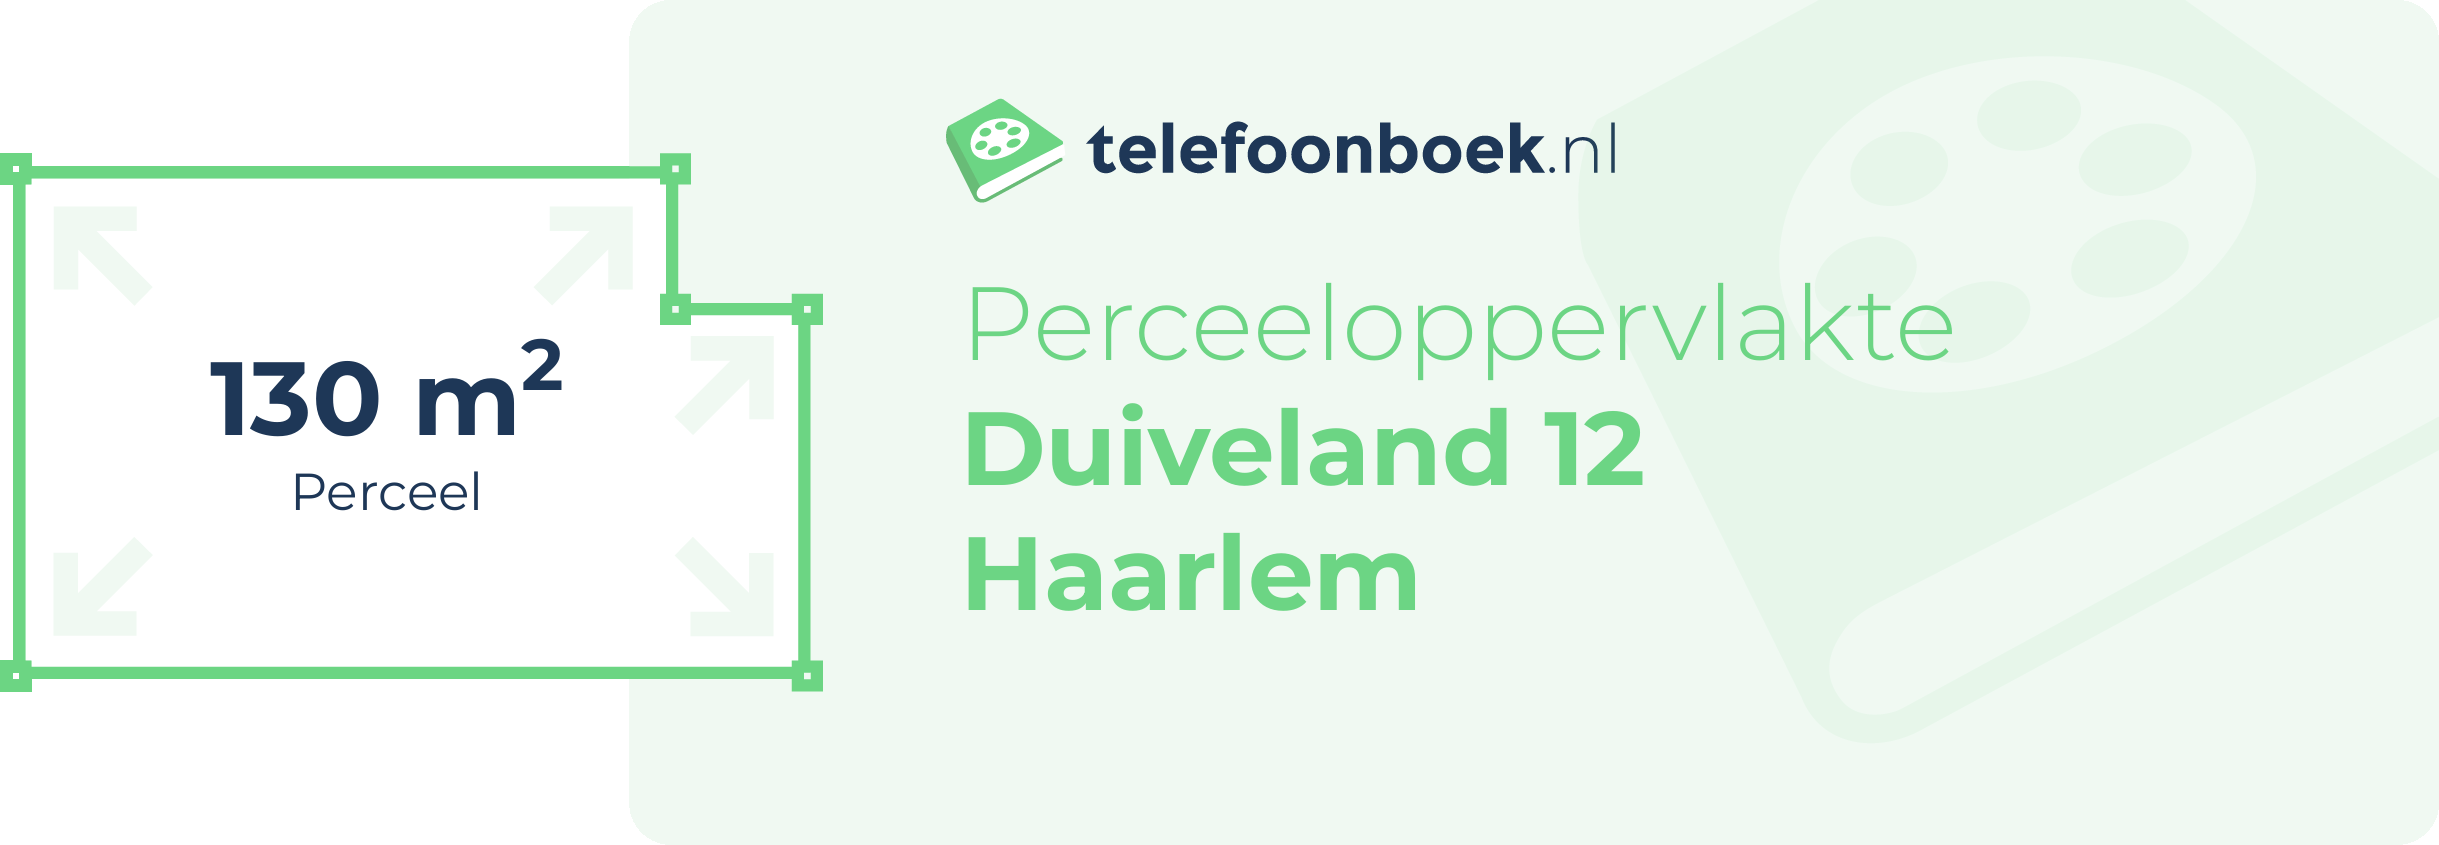 Perceeloppervlakte Duiveland 12 Haarlem